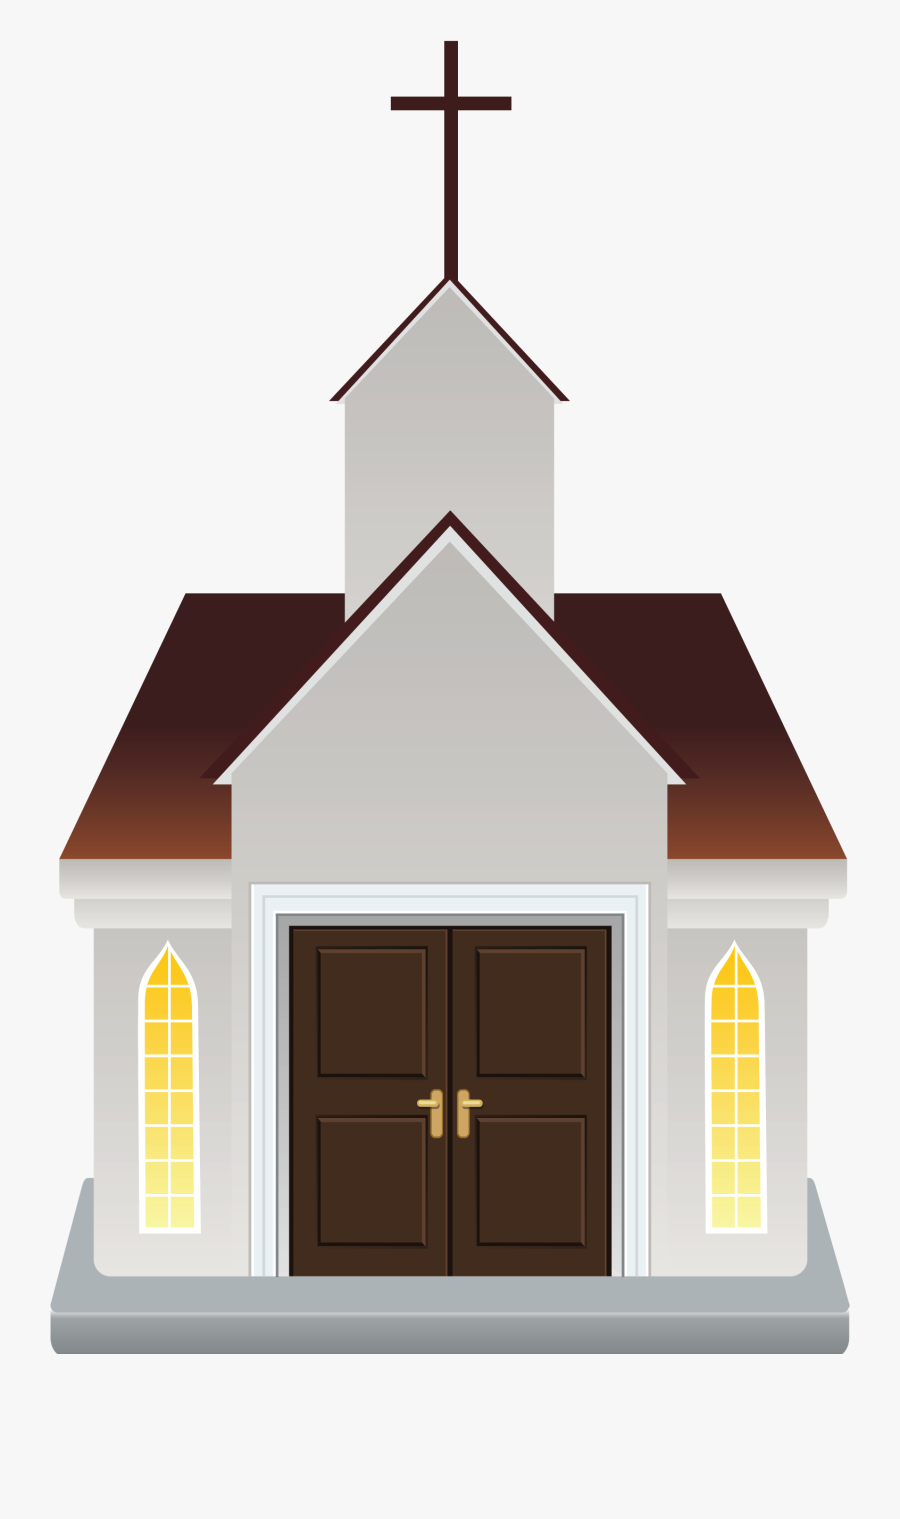 Building Church Cartoon Icon Download Hq Png Clipart - Cartoon Church ...